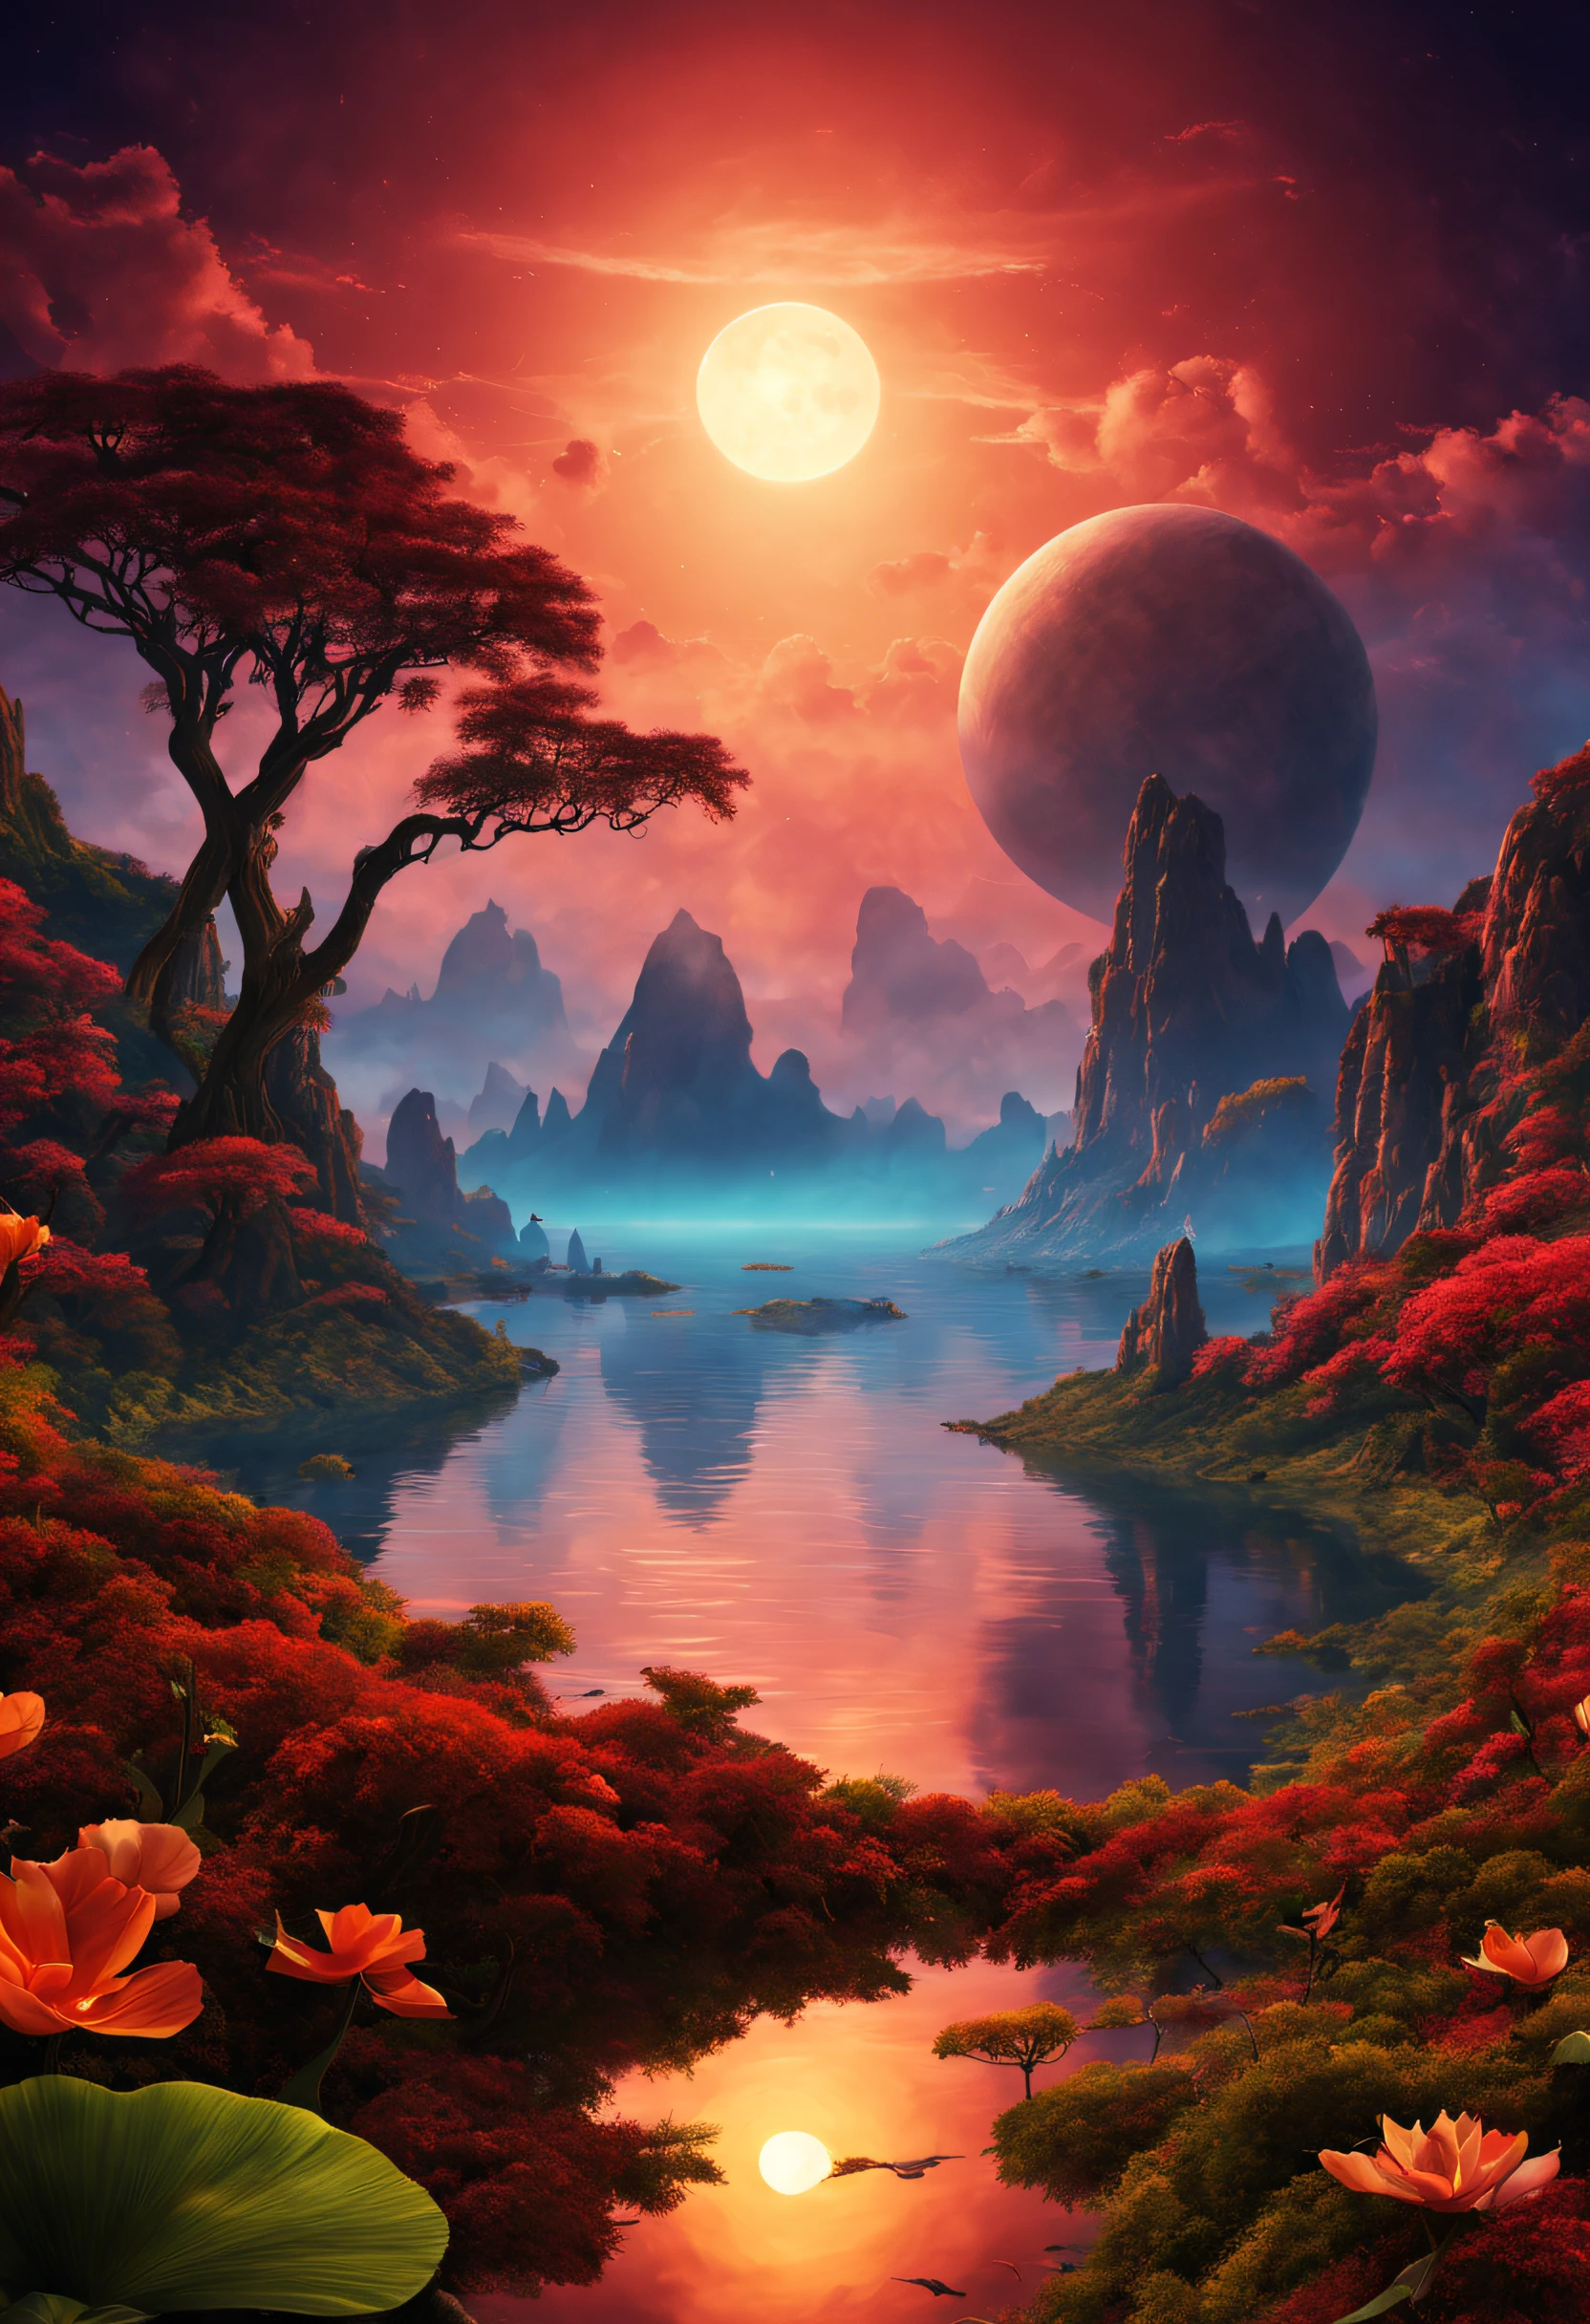 Uma bela e magnífica paisagem imaginária num planeta exótico com um pôr do sol duplo e uma extraordinária